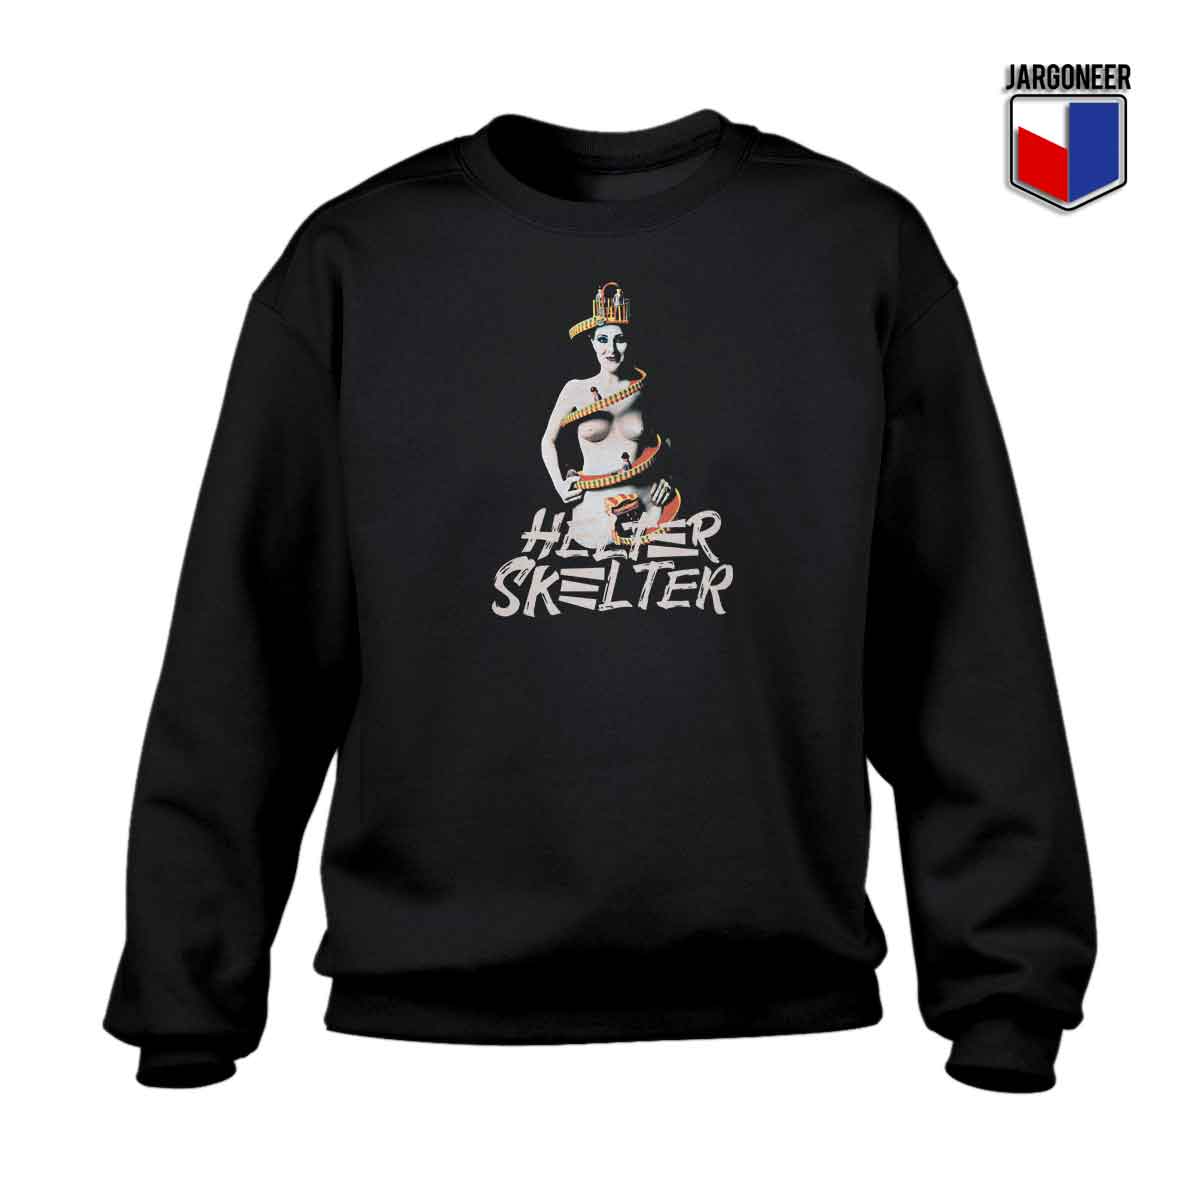 Helter Skelter 1 - Shop Unique Graphic Cool Shirt Designs